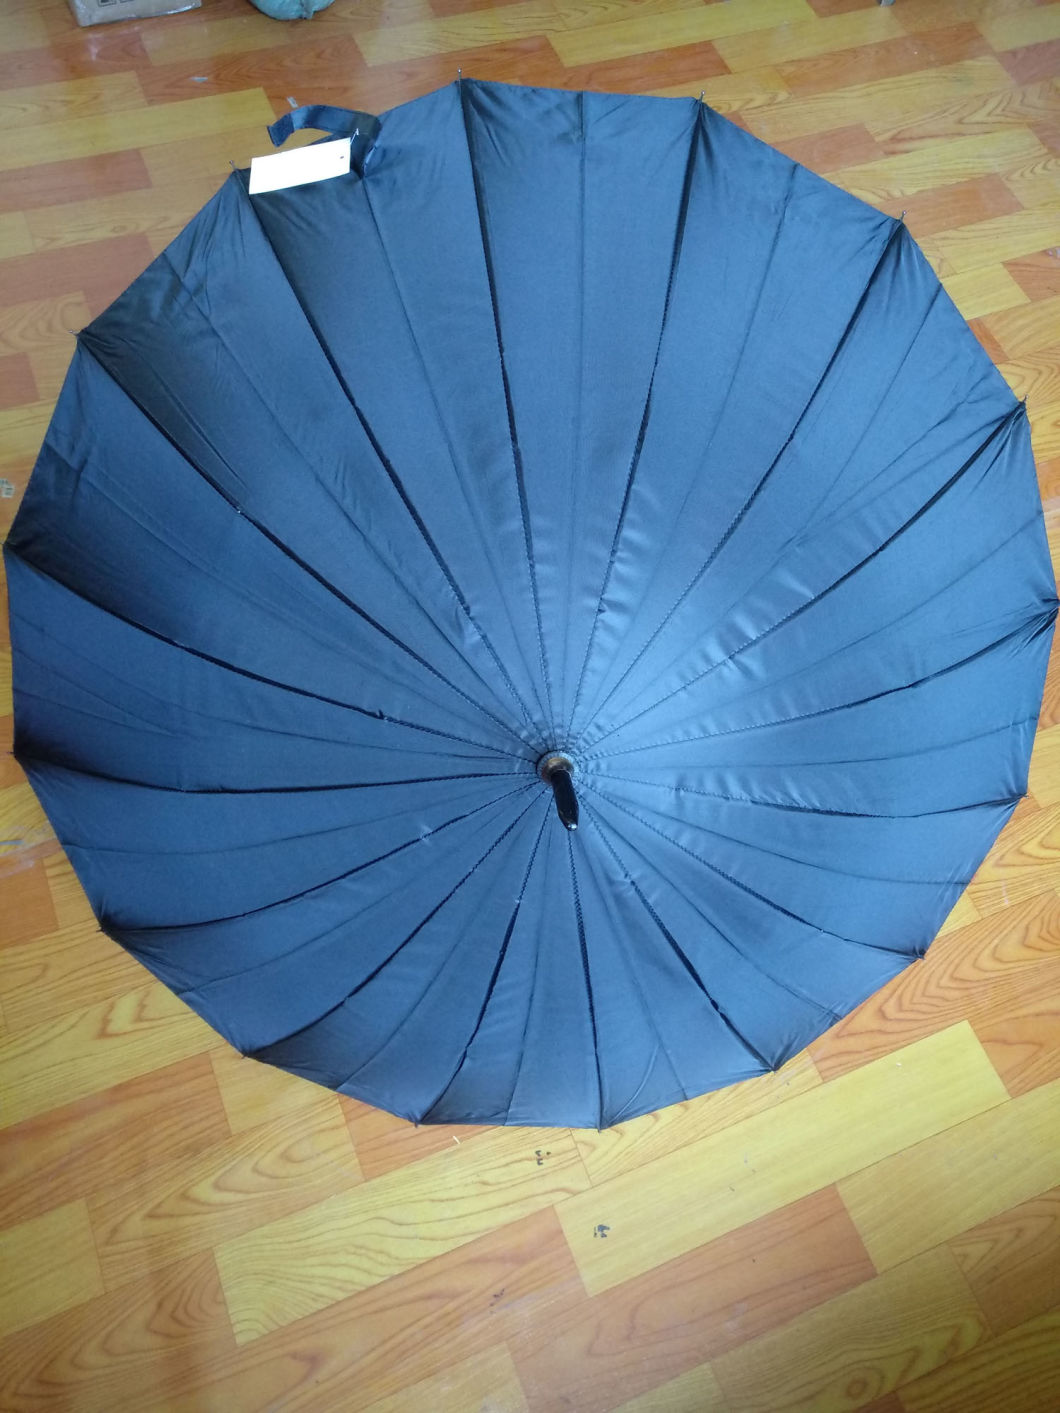 Black Anti UV Sun Umbrella for Adult